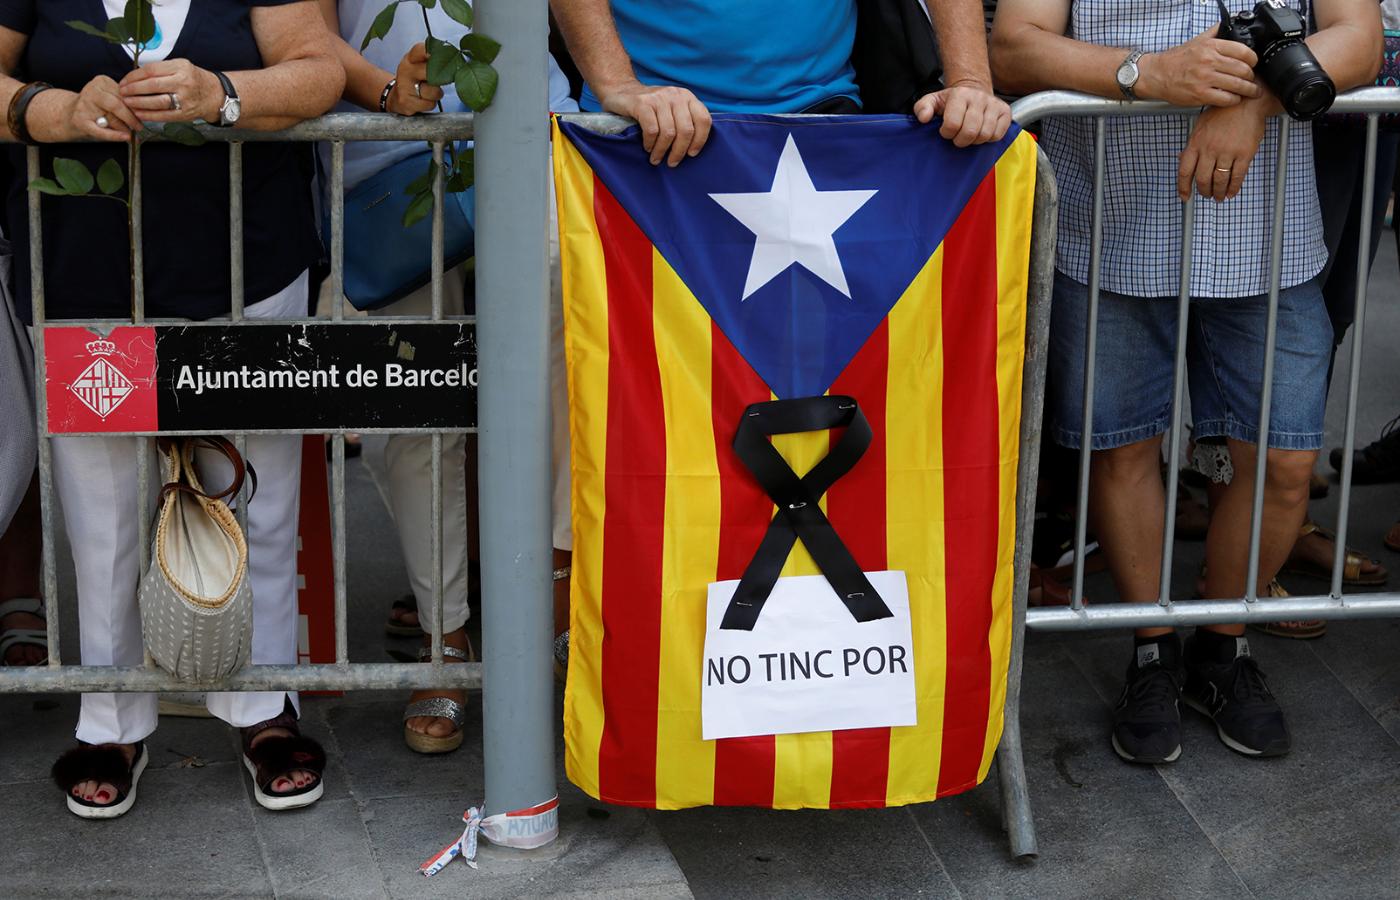 Protesty zwolenników autonomii Katalonii w Barcelonie